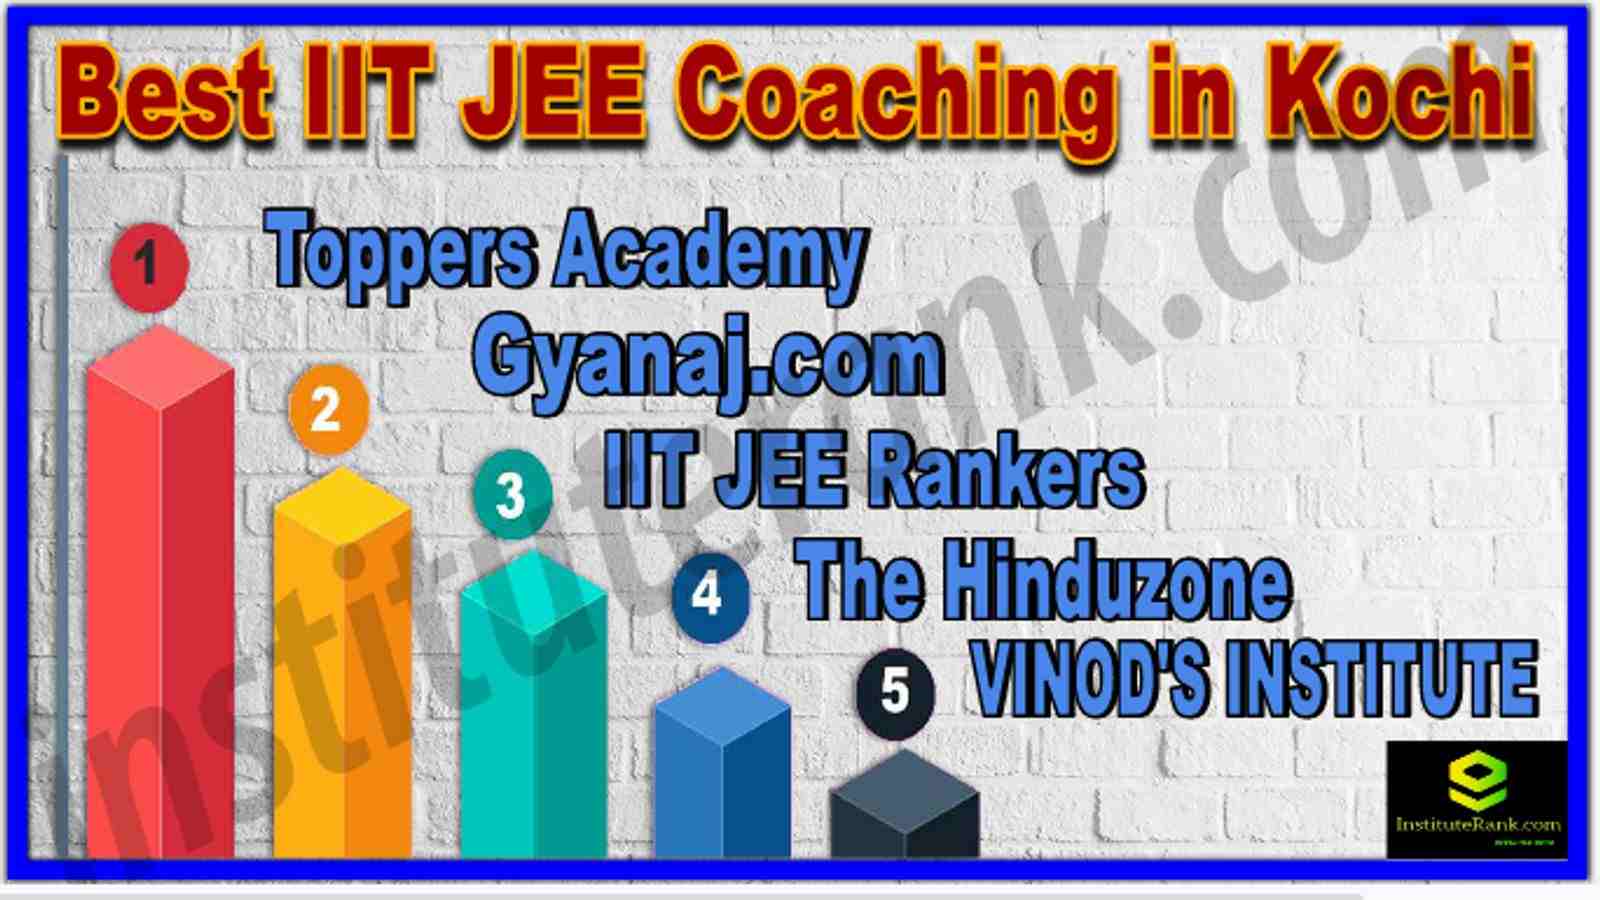 Best IIT JEE Coaching in Kochi